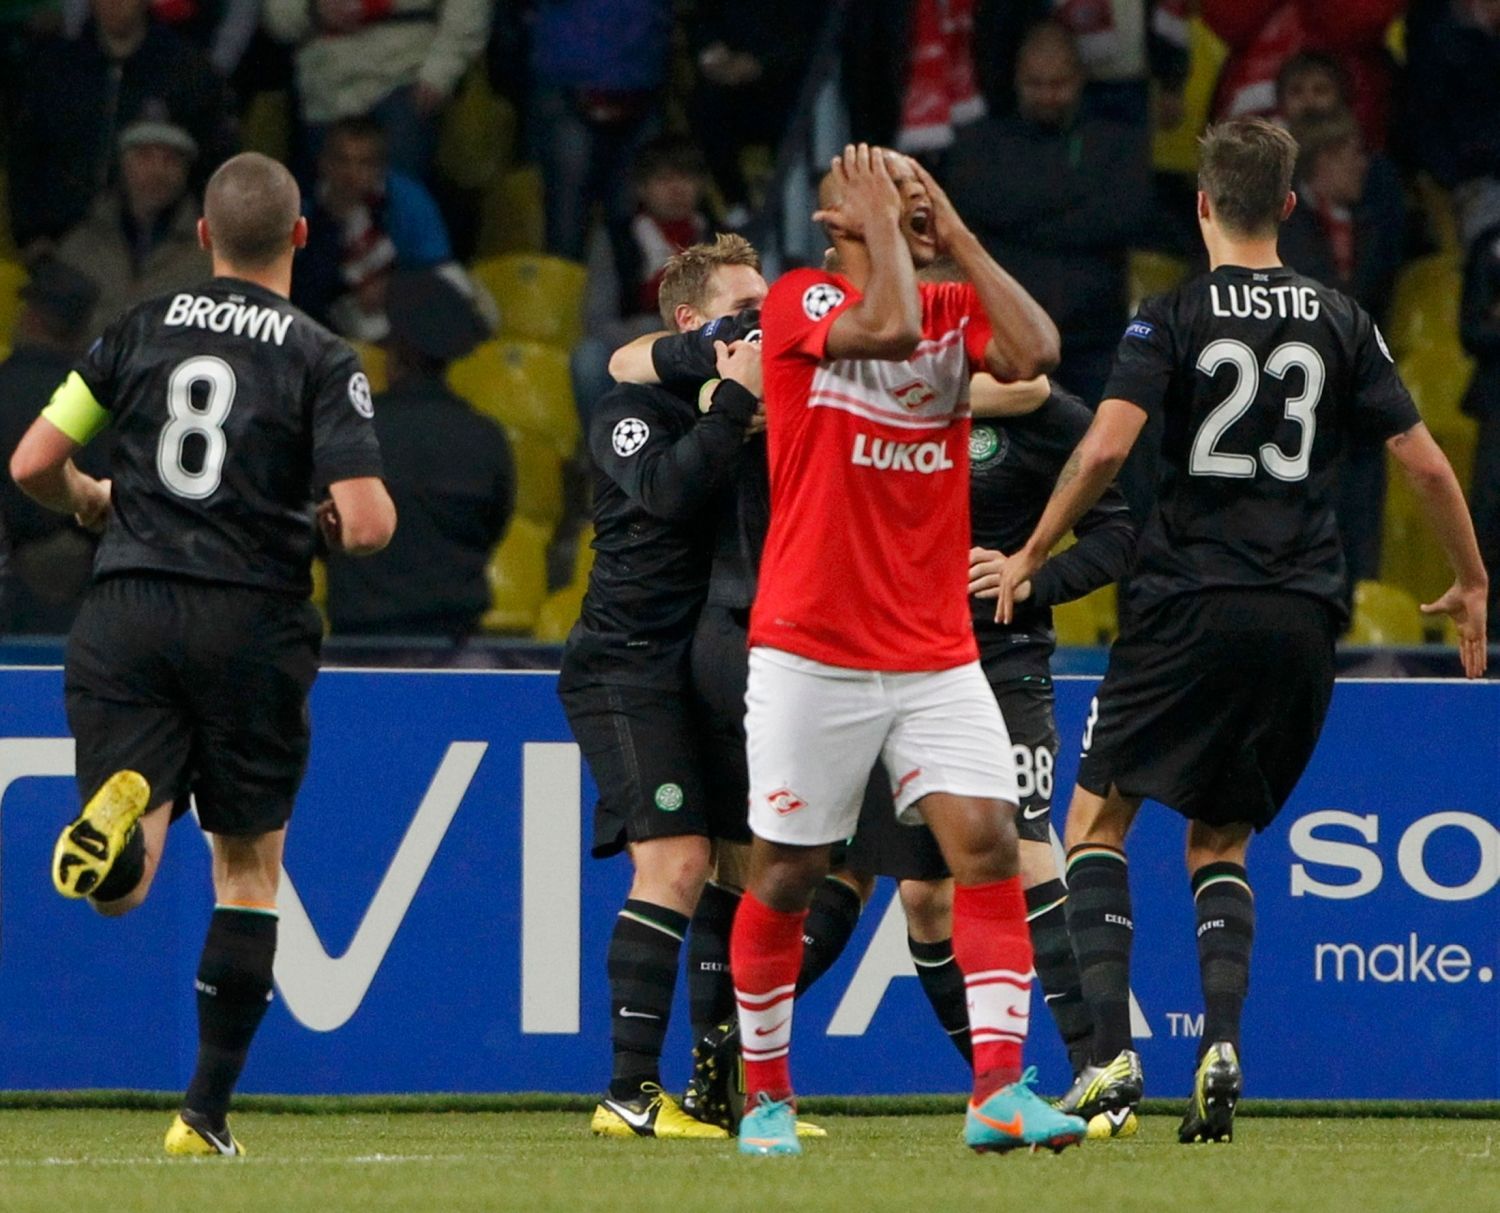 Fotbalista Spartaku Moskva Ari lituje inkasovaného gólu v utkání Ligy mistrů 2012/13 se Celticem Glasgow.